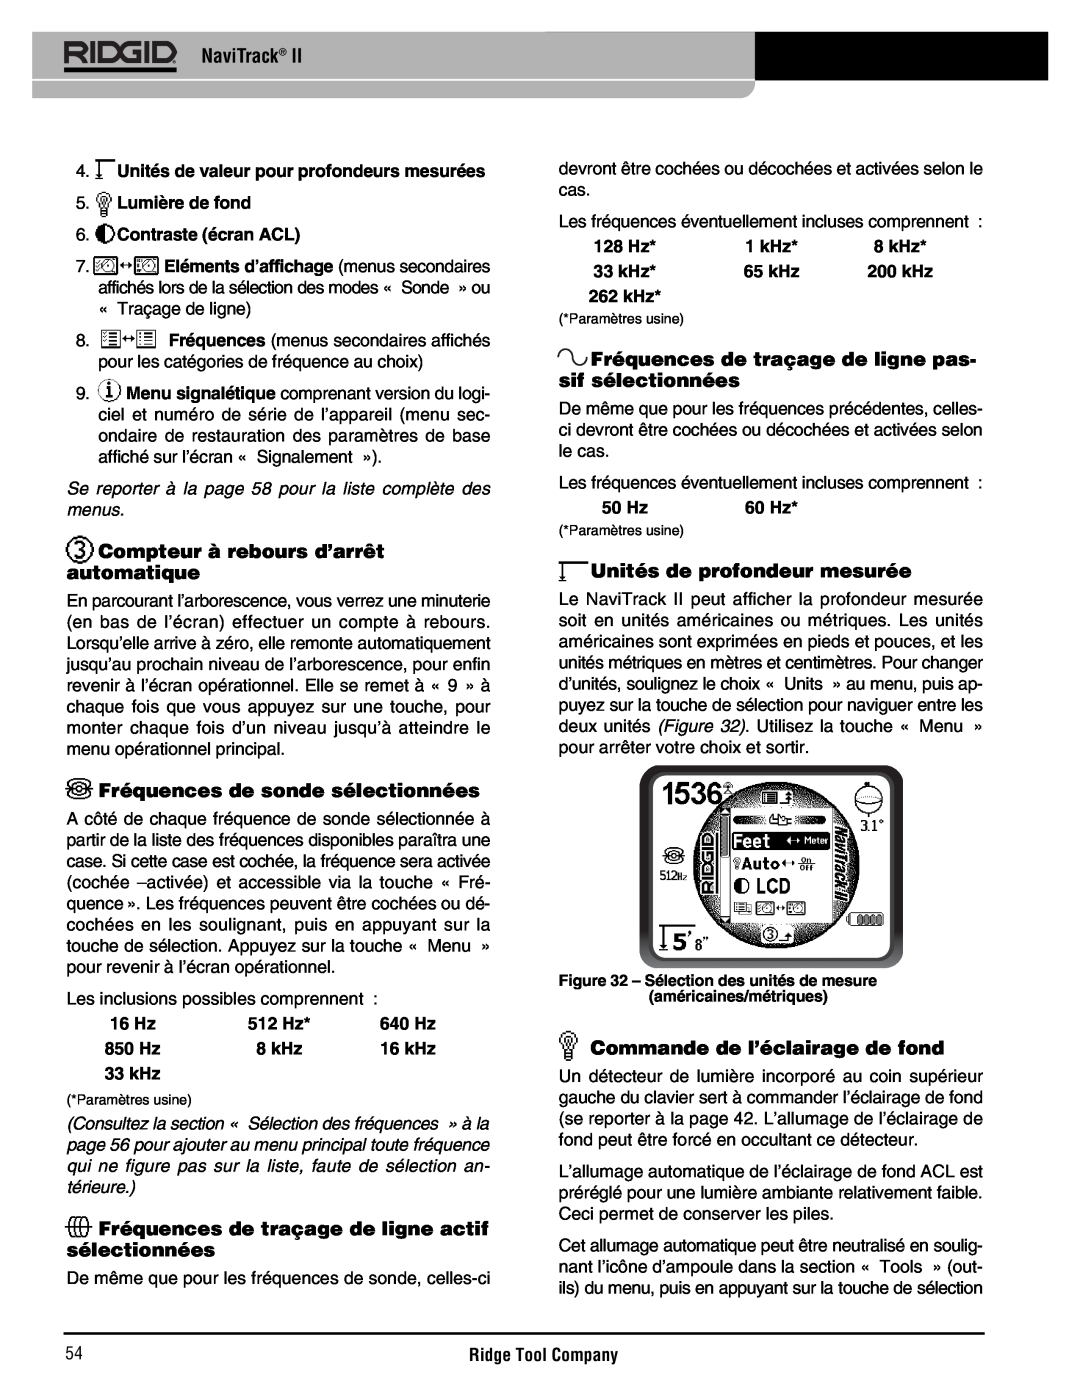 RIDGID Metal Detector manual Compteur à rebours d’arrêt automatique, Fréquences de sonde sélectionnées, Contraste écran ACL 